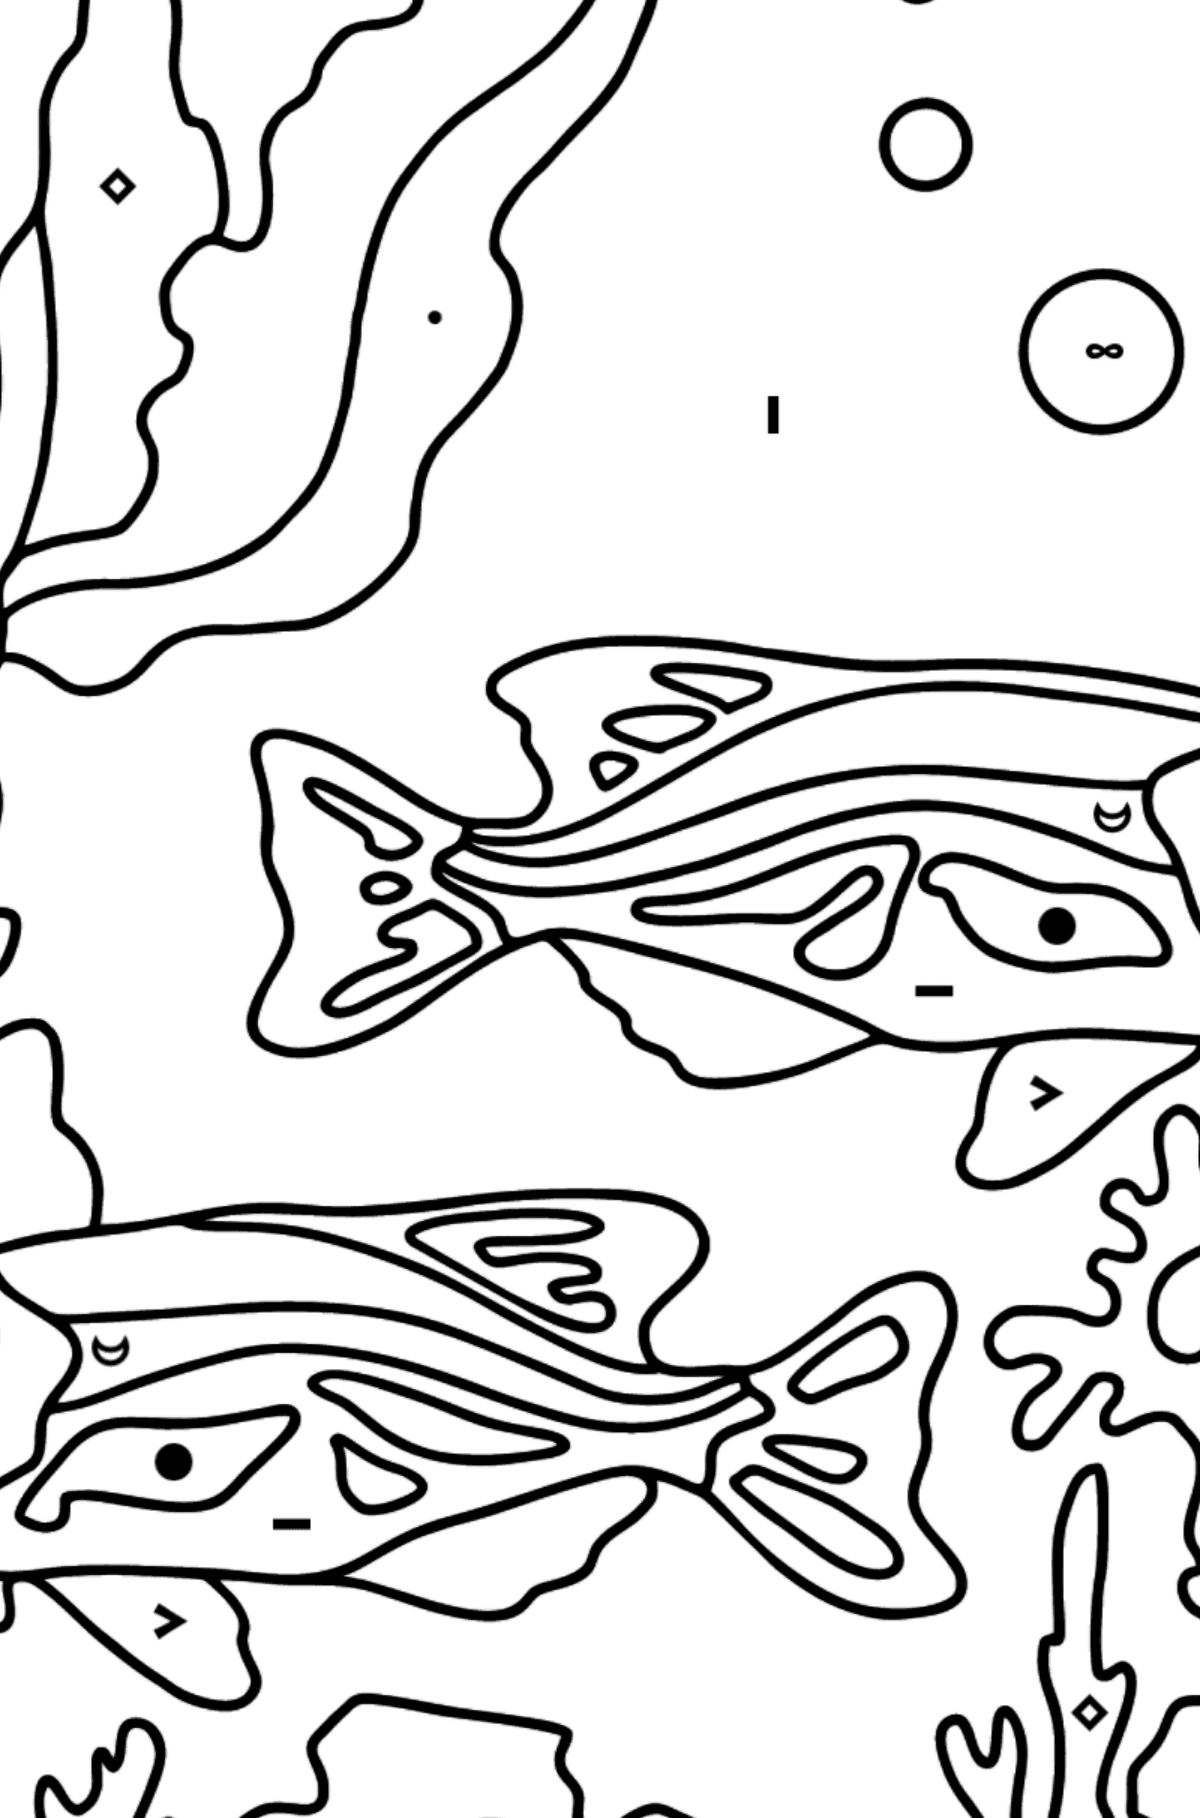 Dibujo para Colorear - Los Peces están Nadando Juntos Pacíficamente - Colorear por Símbolos para Niños